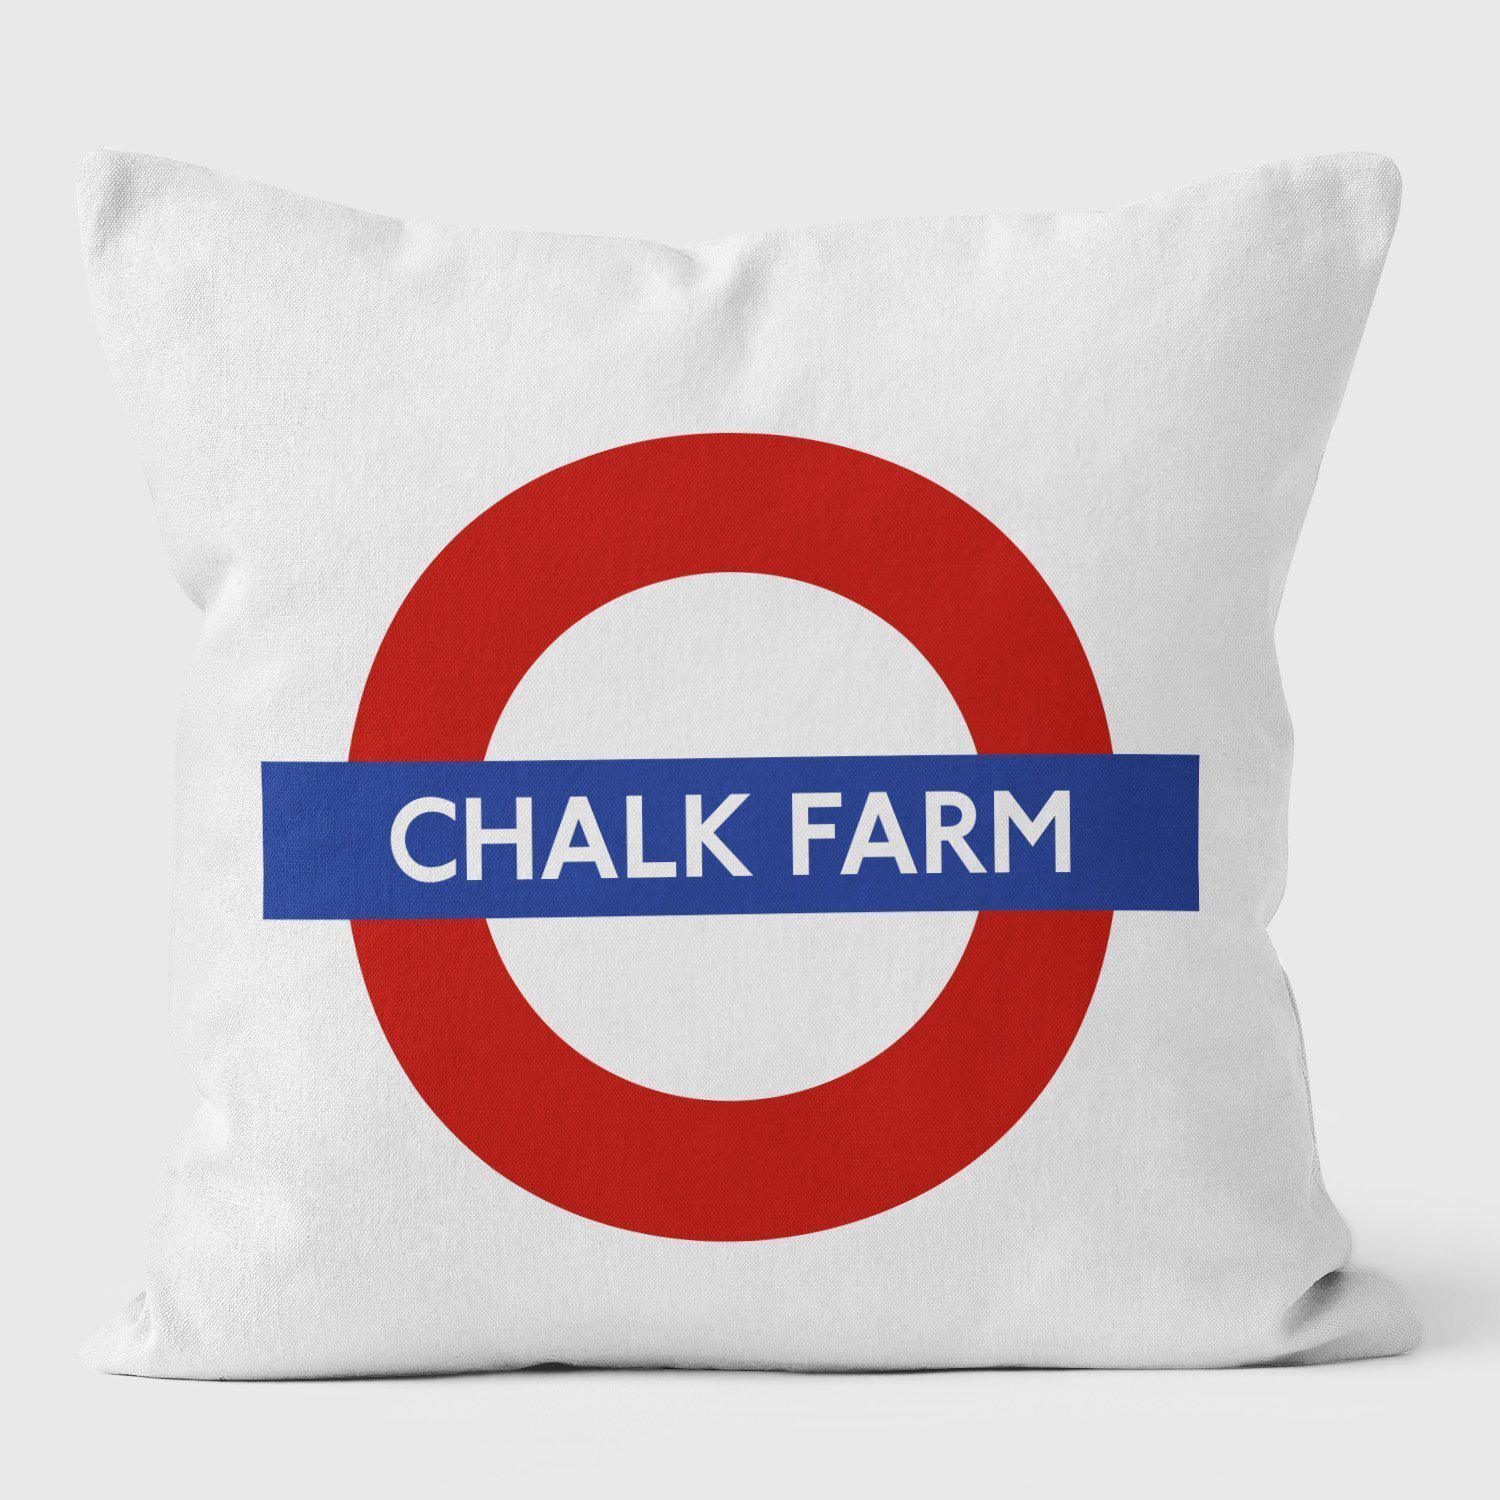 Chalk Farm Tube London Underground Tube Station Roundel Cushion - Handmade Cushions UK - WeLoveCushions